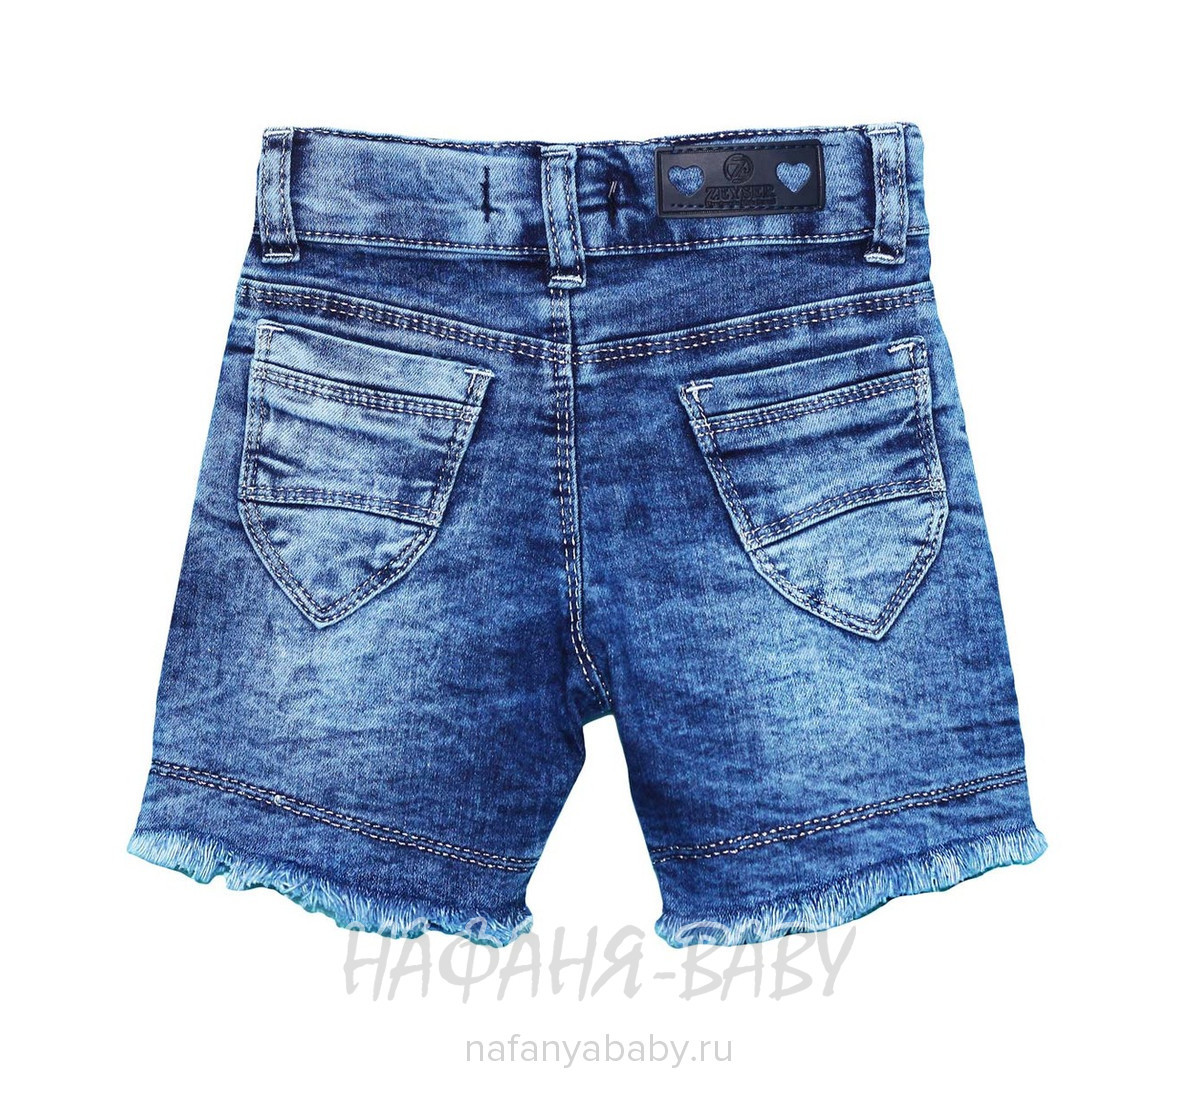 Детские джинсовые шорты ZEISER, купить в интернет магазине Нафаня. арт: 42010.